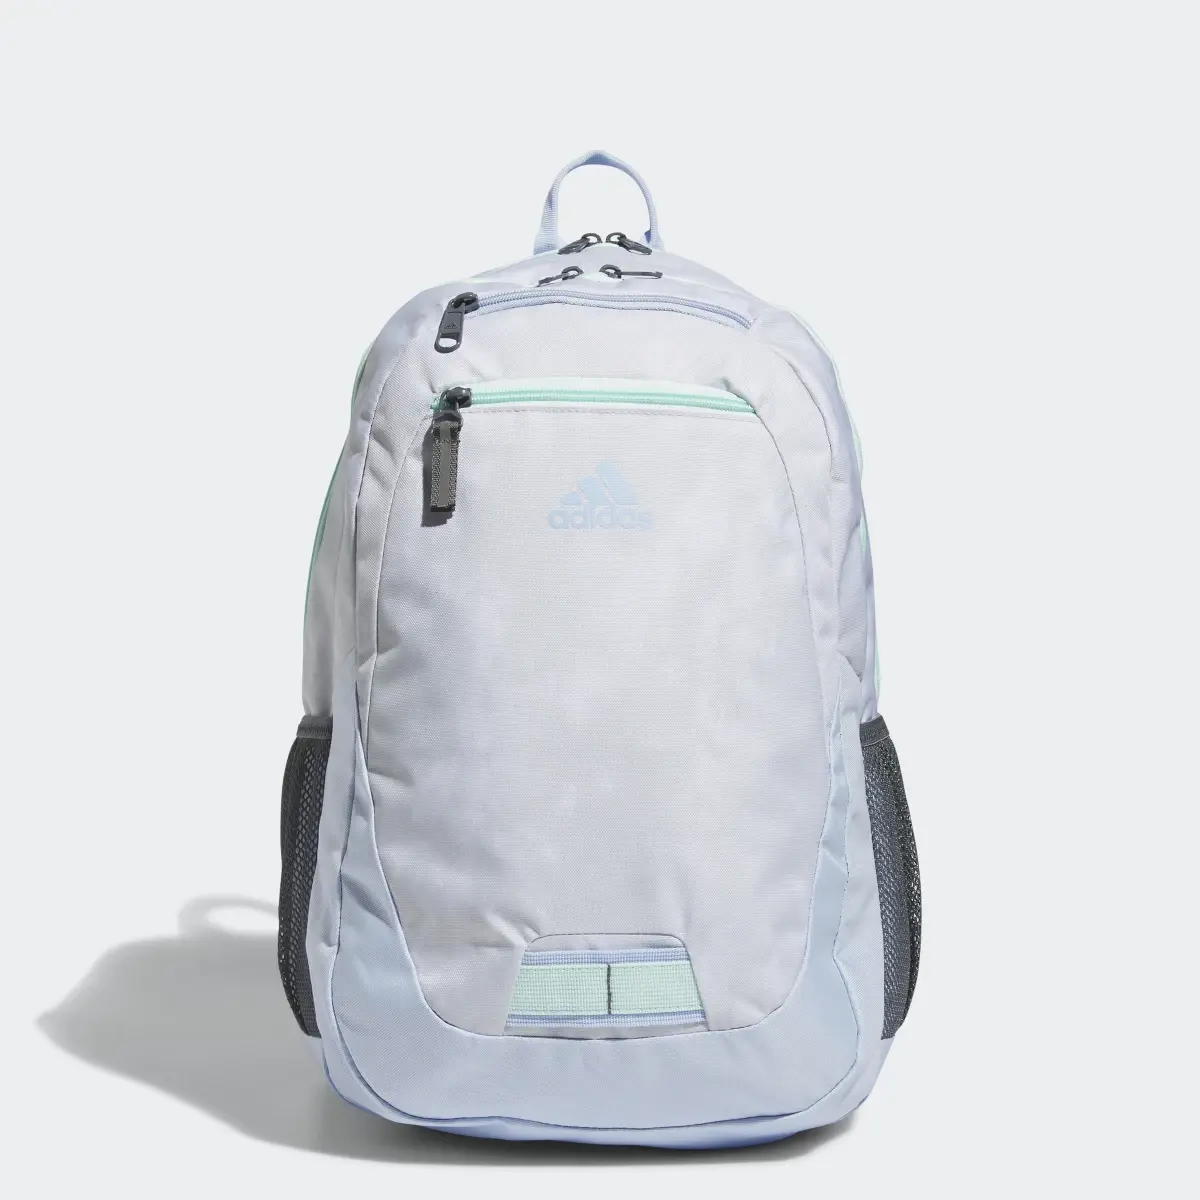 Adidas Foundation 6 Backpack. 1